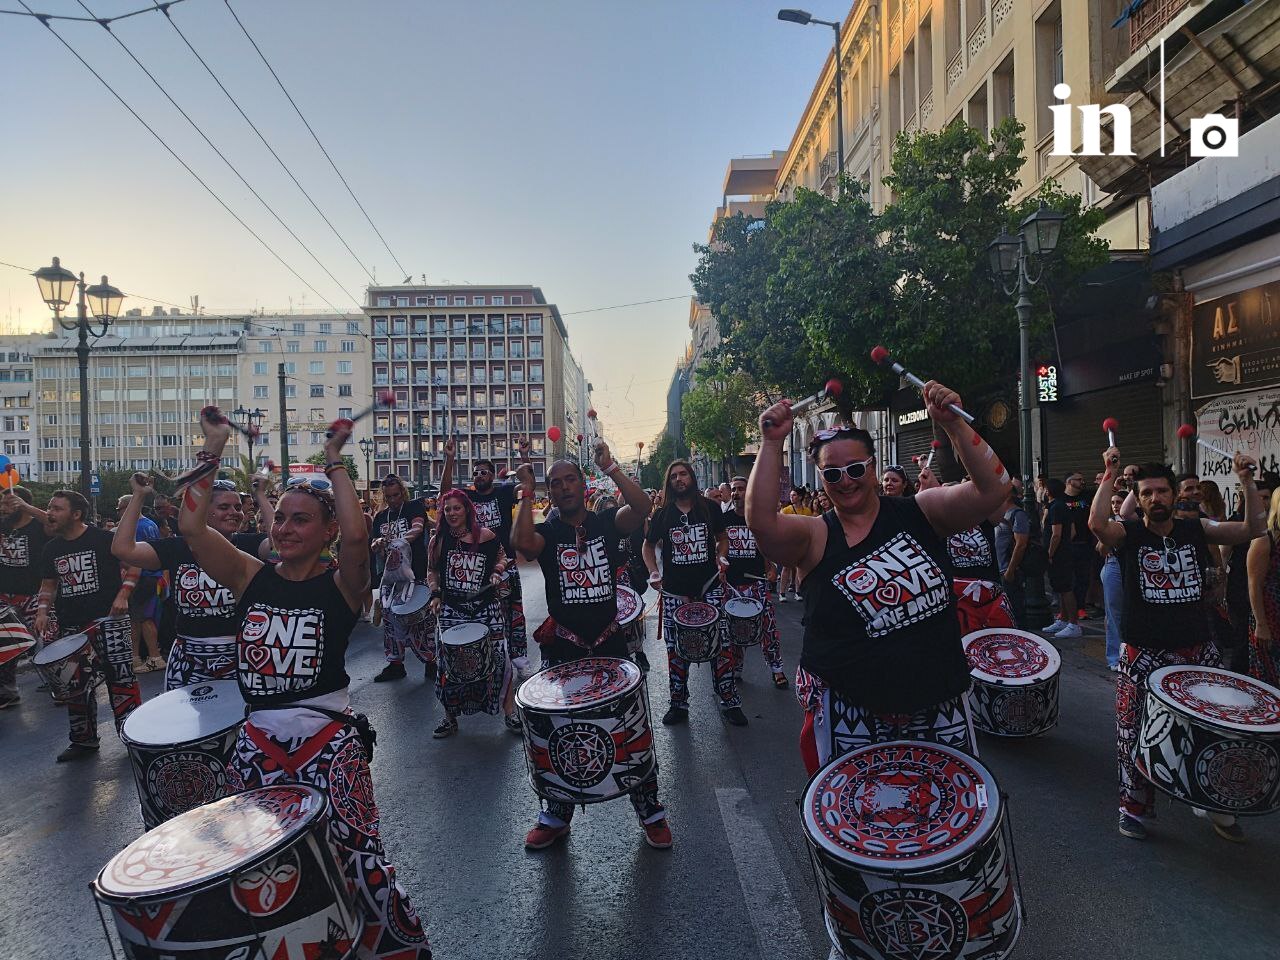 Athens Pride: «Ένας νόμος δεν αρκεί» - Πραγματική κοινωνική αλλαγή ζητά η ΛΟΑΤΚΙ+ κοινότητα